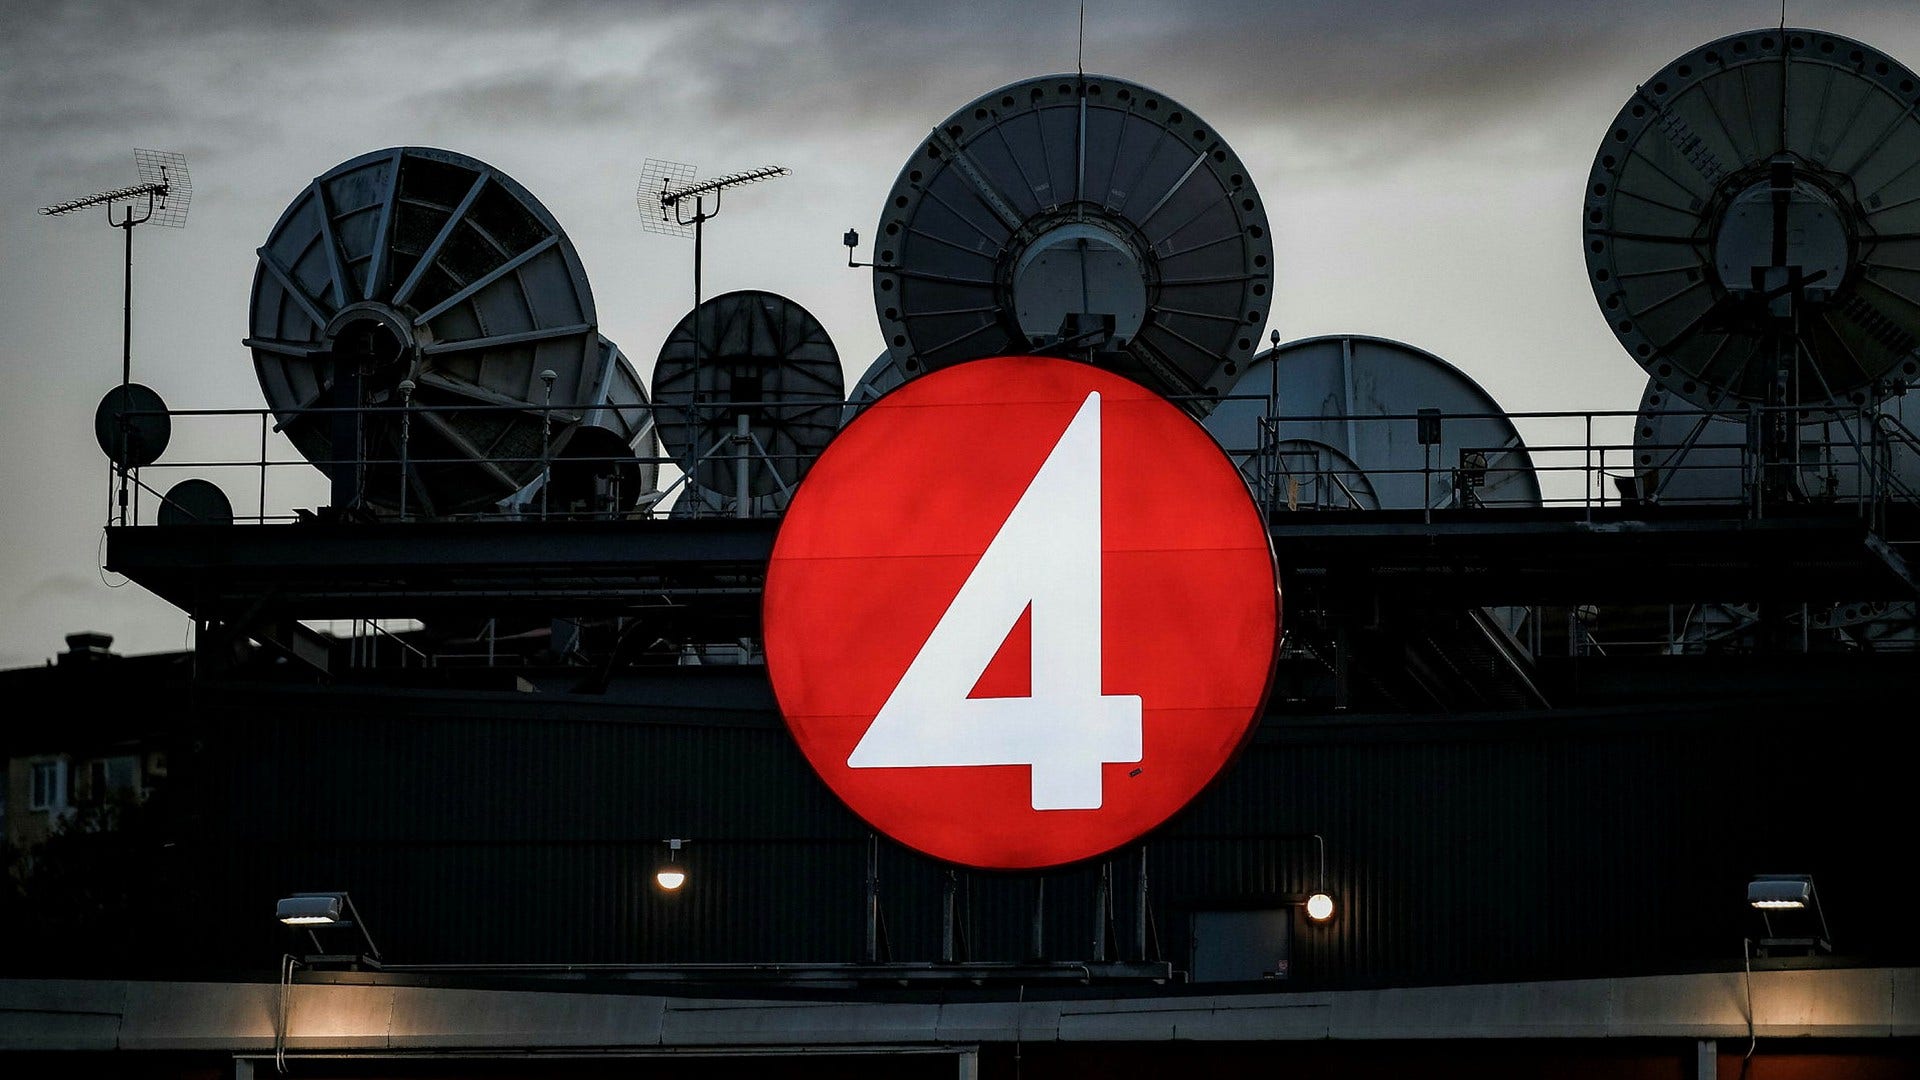 TV4:s wallraffande reporter på programmet ”Kalla fakta” förtjänar landets finaste journalistpris, anser insändarskribenten.